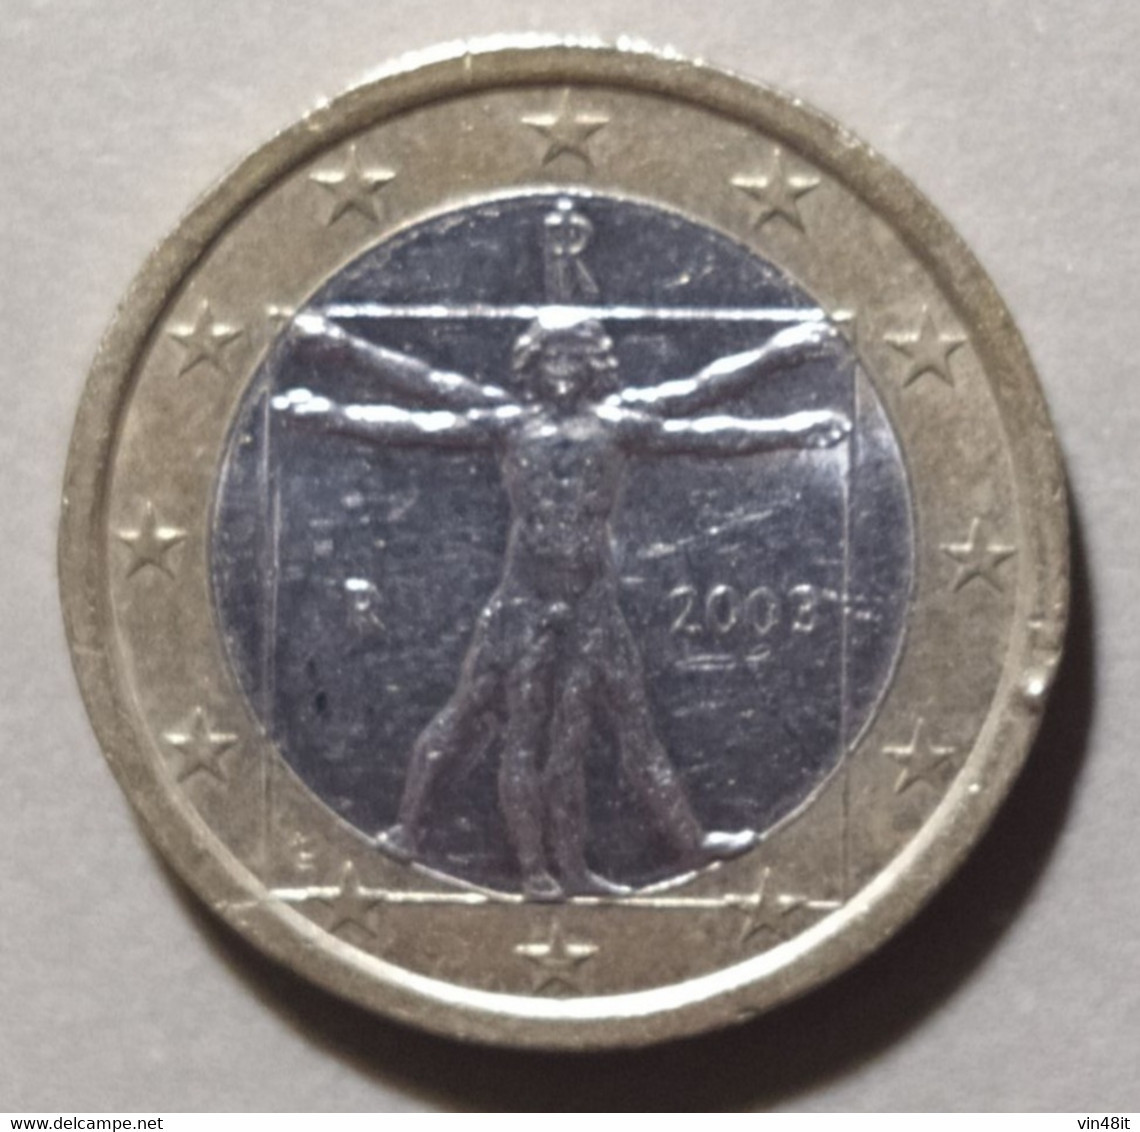 2003 - ITALIA  REPUBBLICA  - MONETA IN EURO  -  DEL VALORE DI 1  EURO - USATA - - Italy